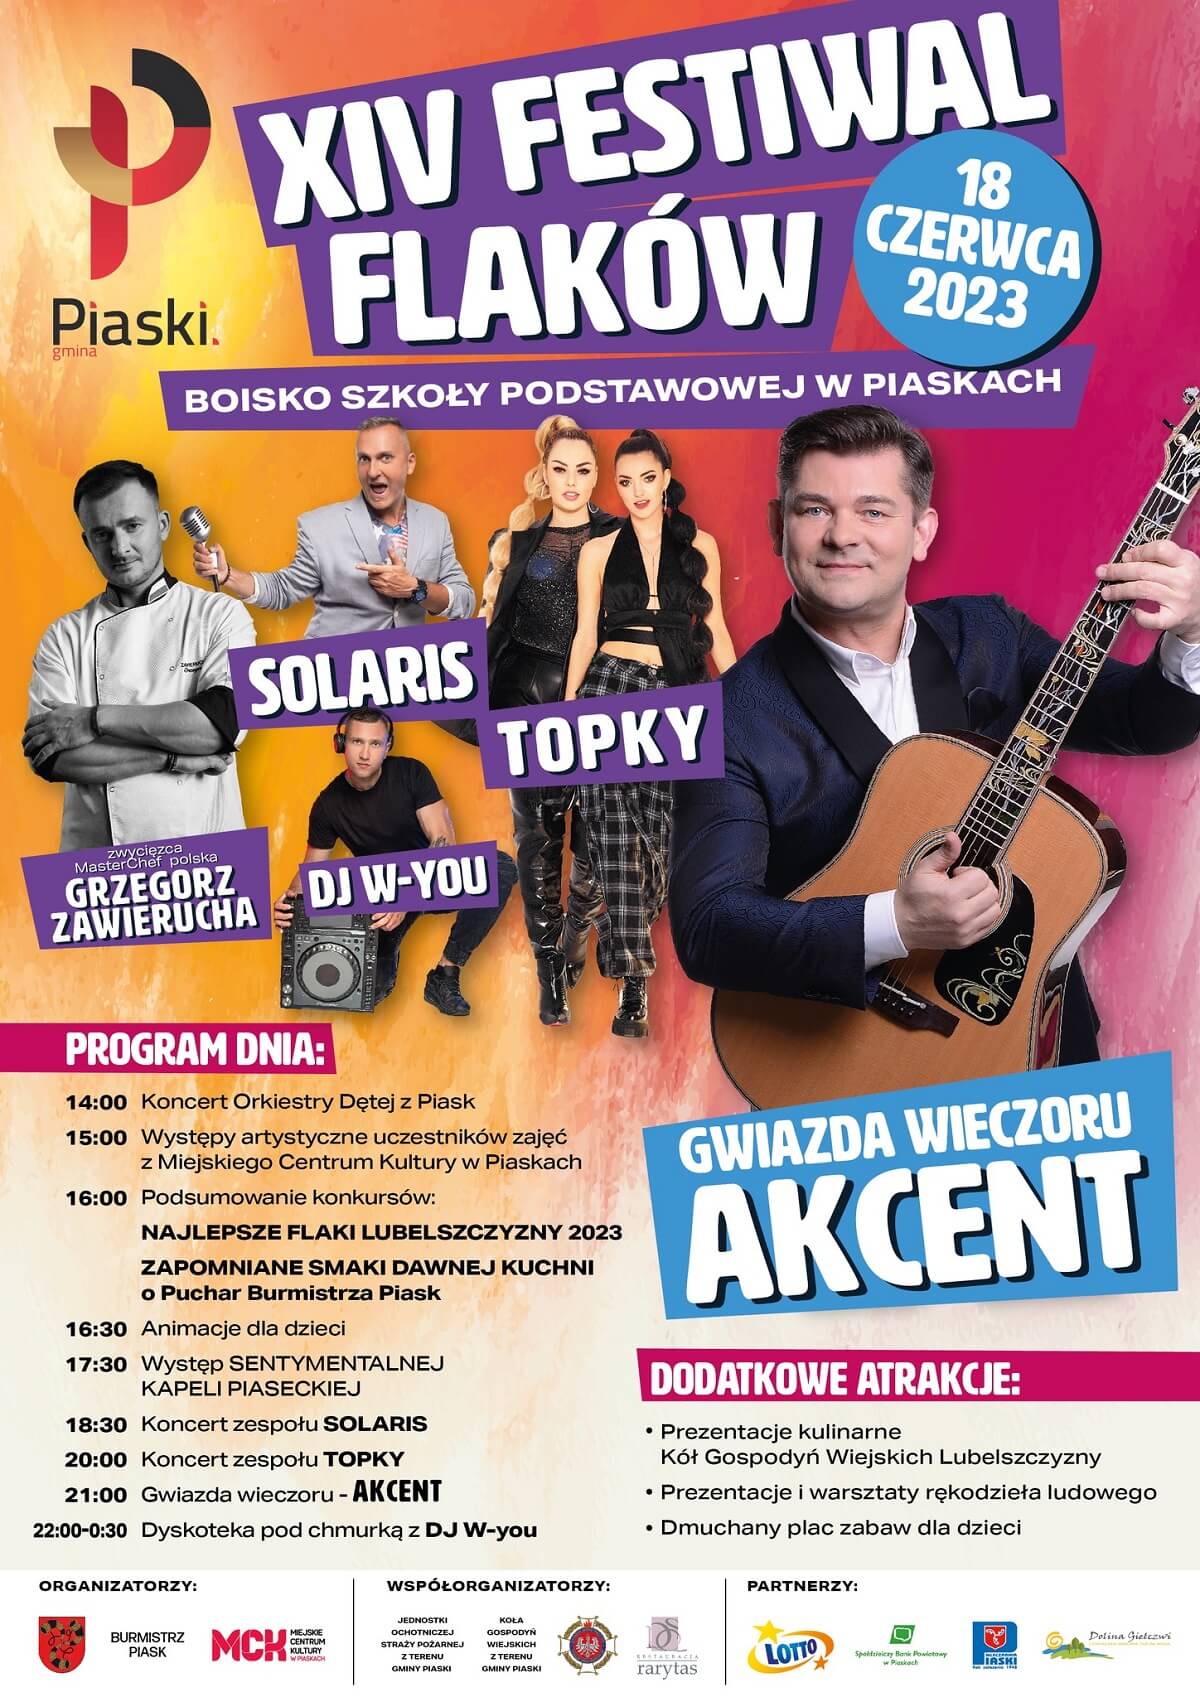 Święto Flaków w Piaskach 2023 - program wydarzeń, plakat